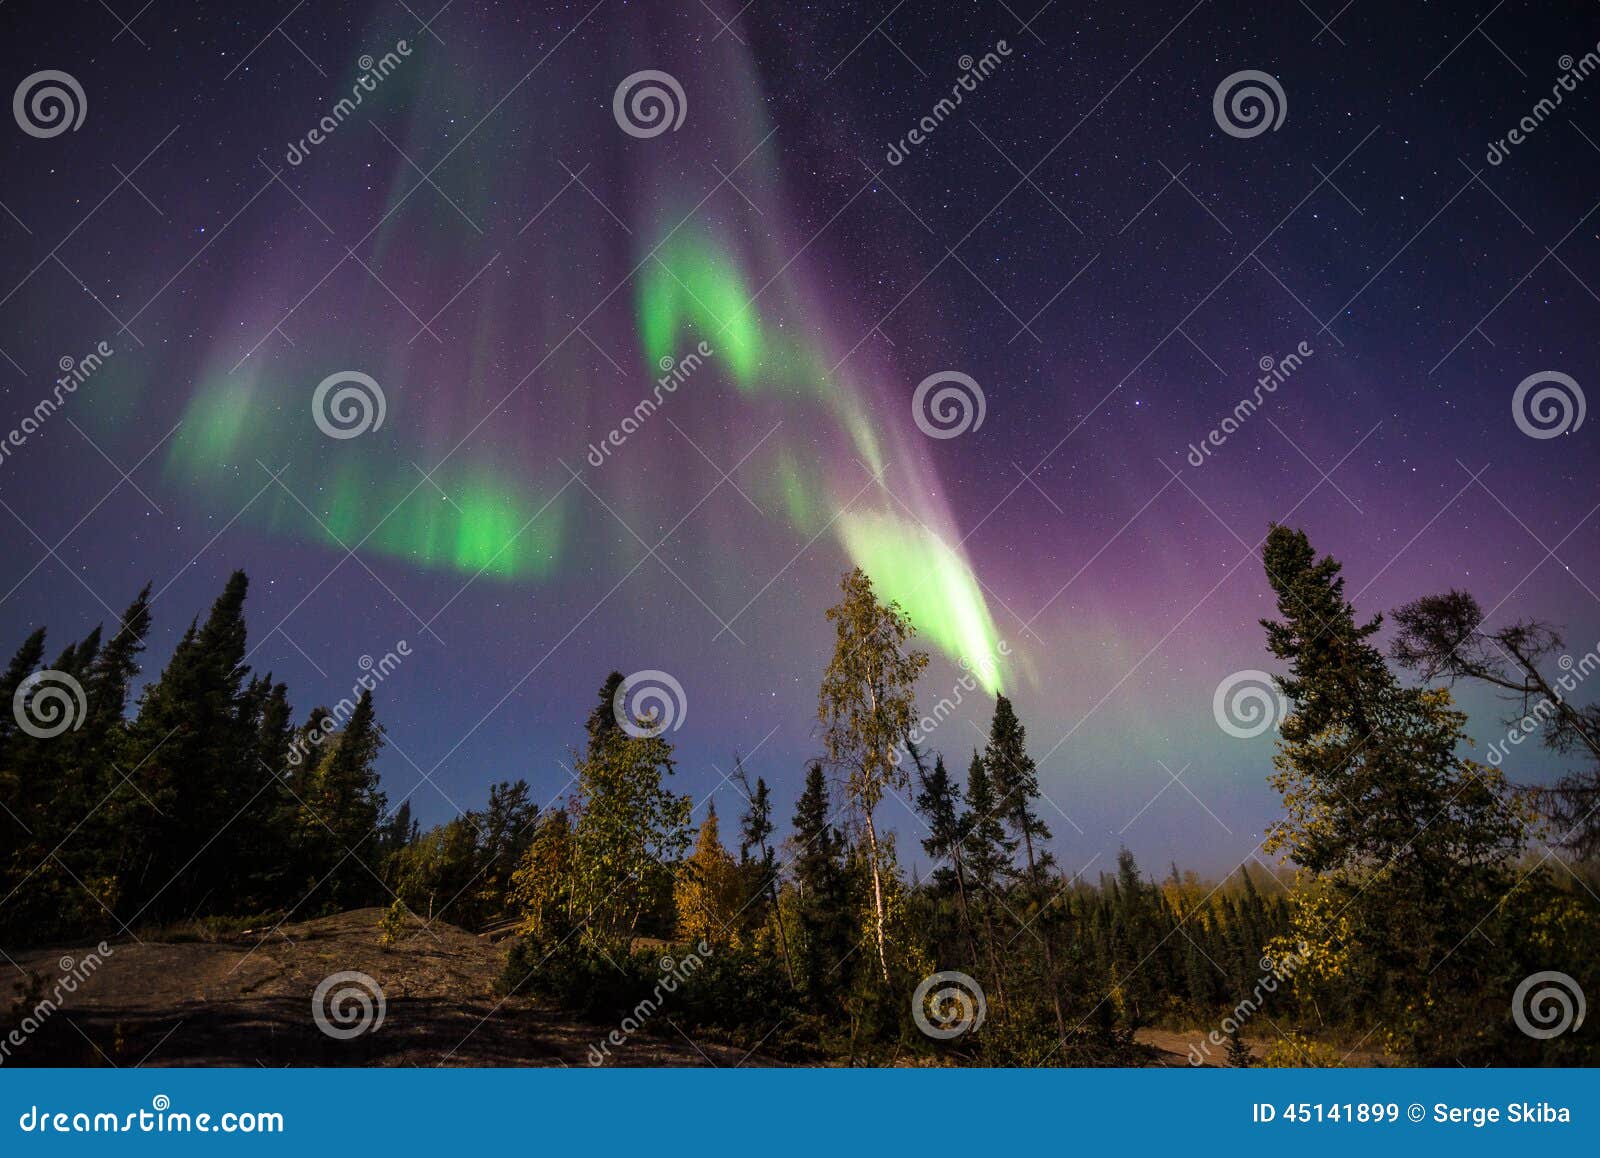 yellowknife aurora borealis 2